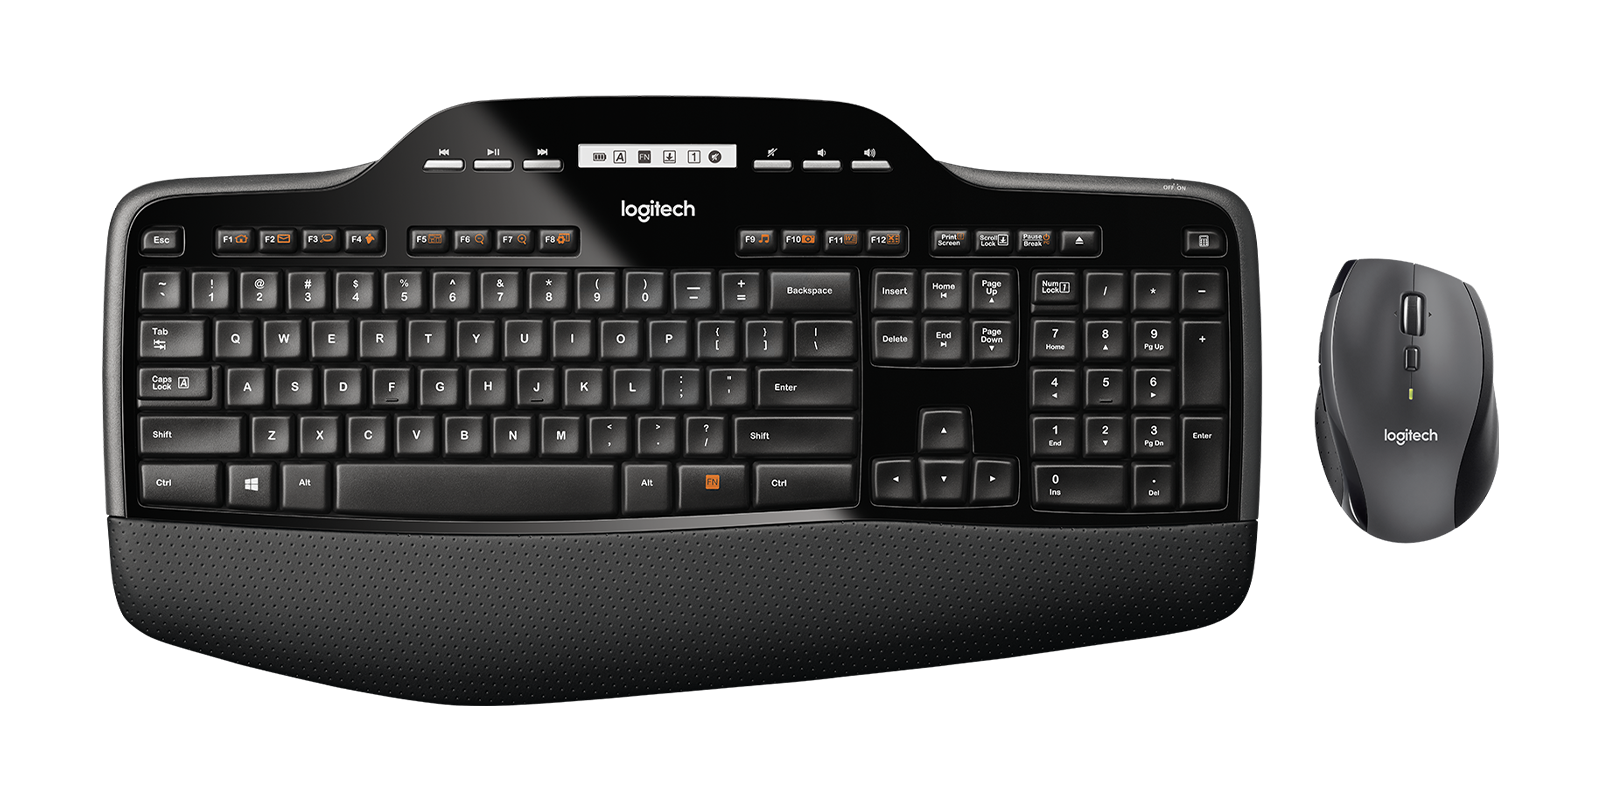 Logitech MK710 Wireless Mouse and Keyboard Combo